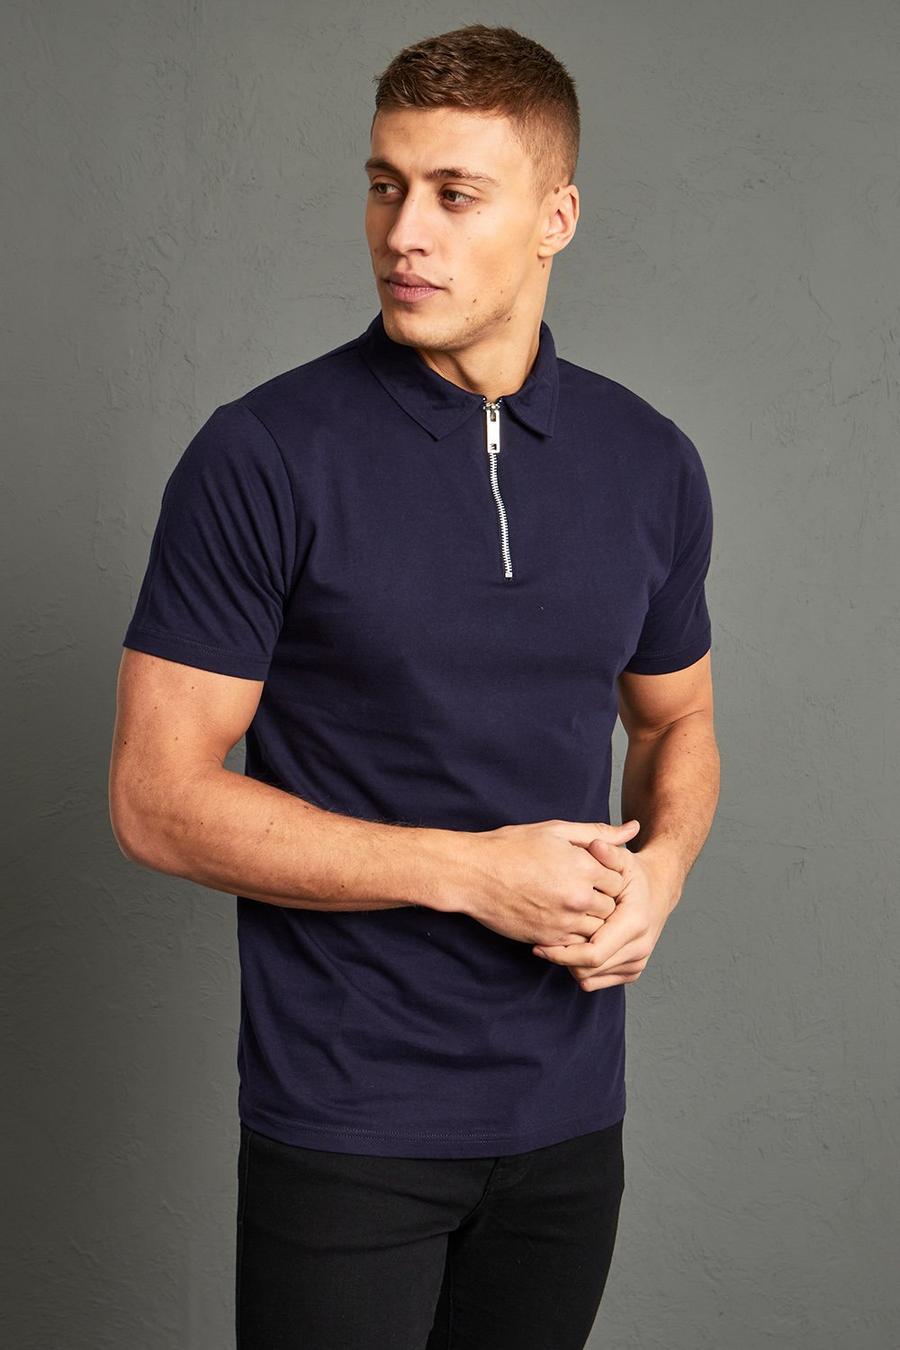 Kurzärmliges Slim-Fit Poloshirt mit Reißverschluss, Navy marineblau